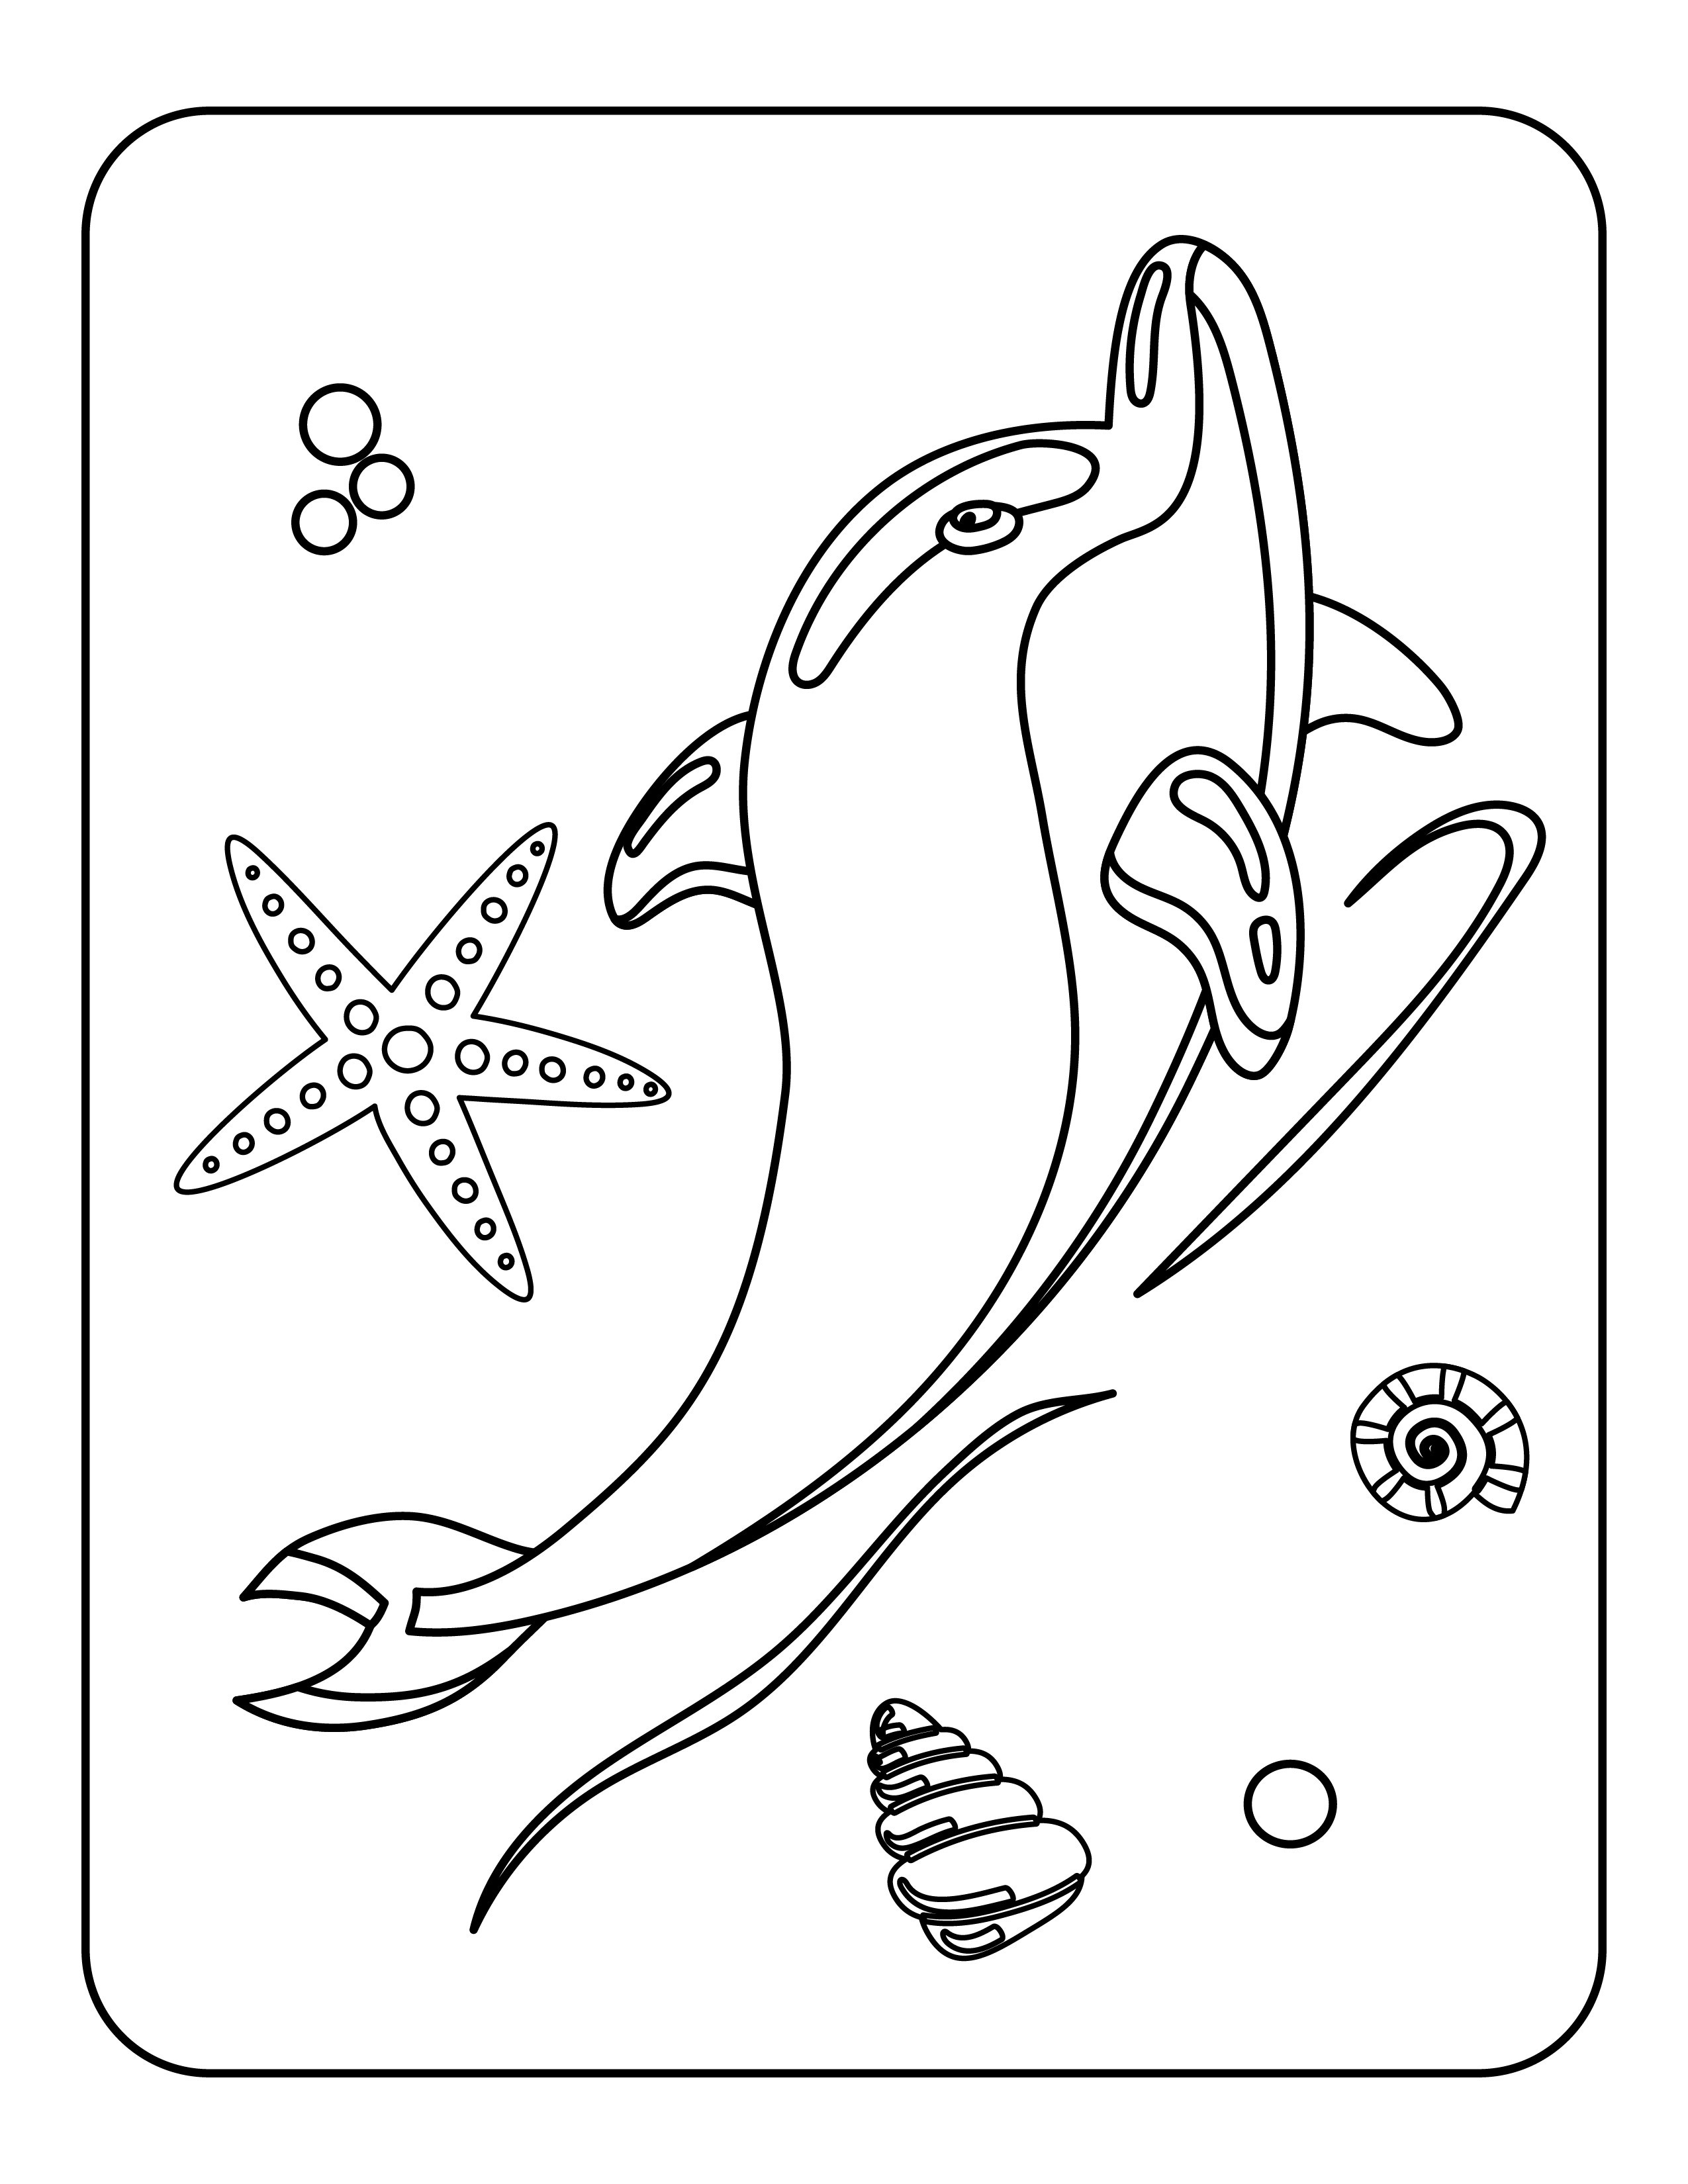 Disegno da colorare di delfino per bambini